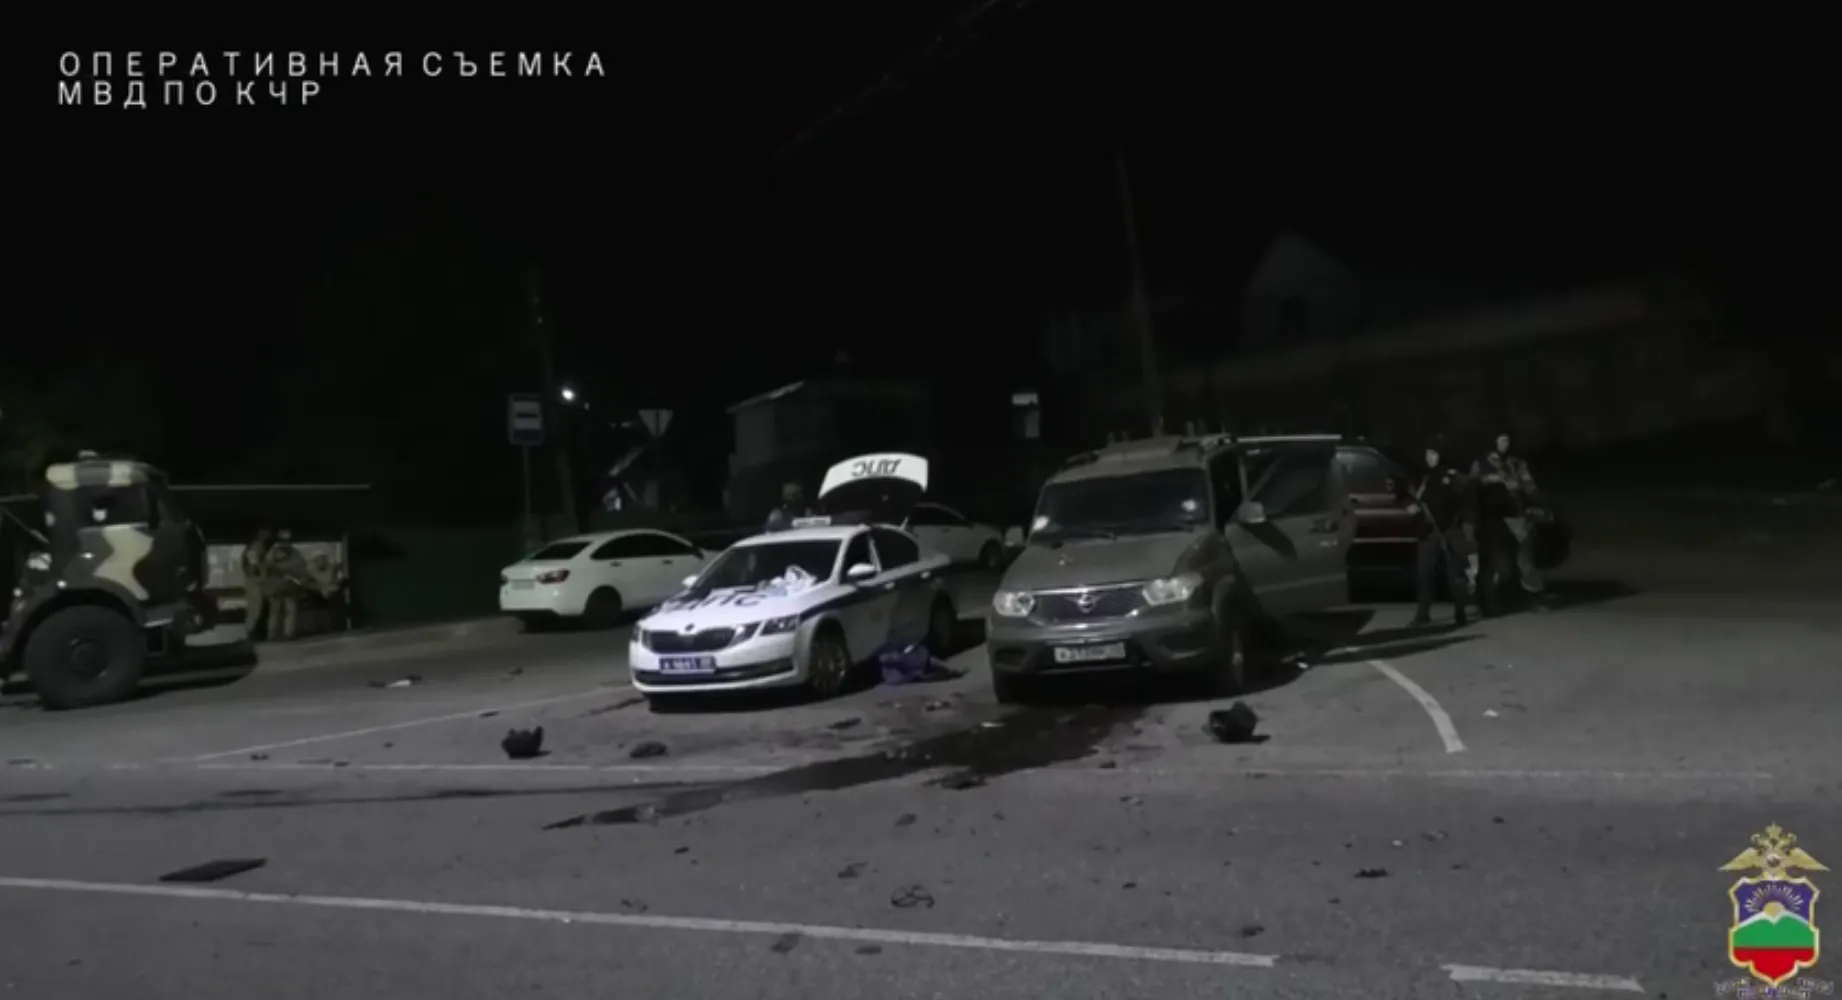 Пятеро напавших на полицейских в КЧР убиты ответным огнём, на месте перестрелки нашли бомбы